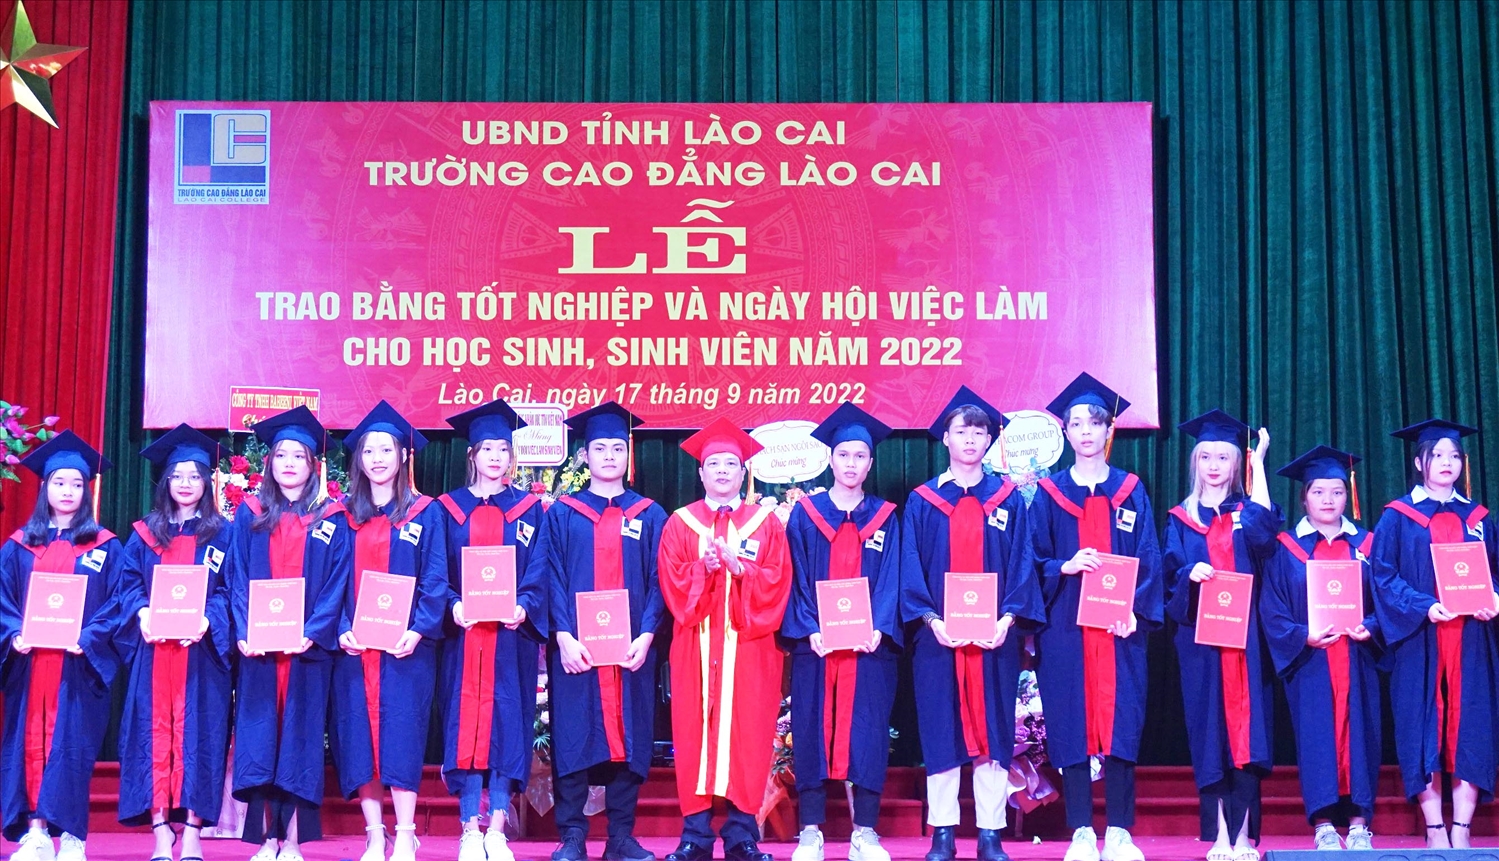 Ngày 17/9, trường Cao đẳng Lào Cai tổ chức trao bằng tốt nghiệp cho gần 600 học sinh, sinh viên hệ Trung cấp và Cao đẳng